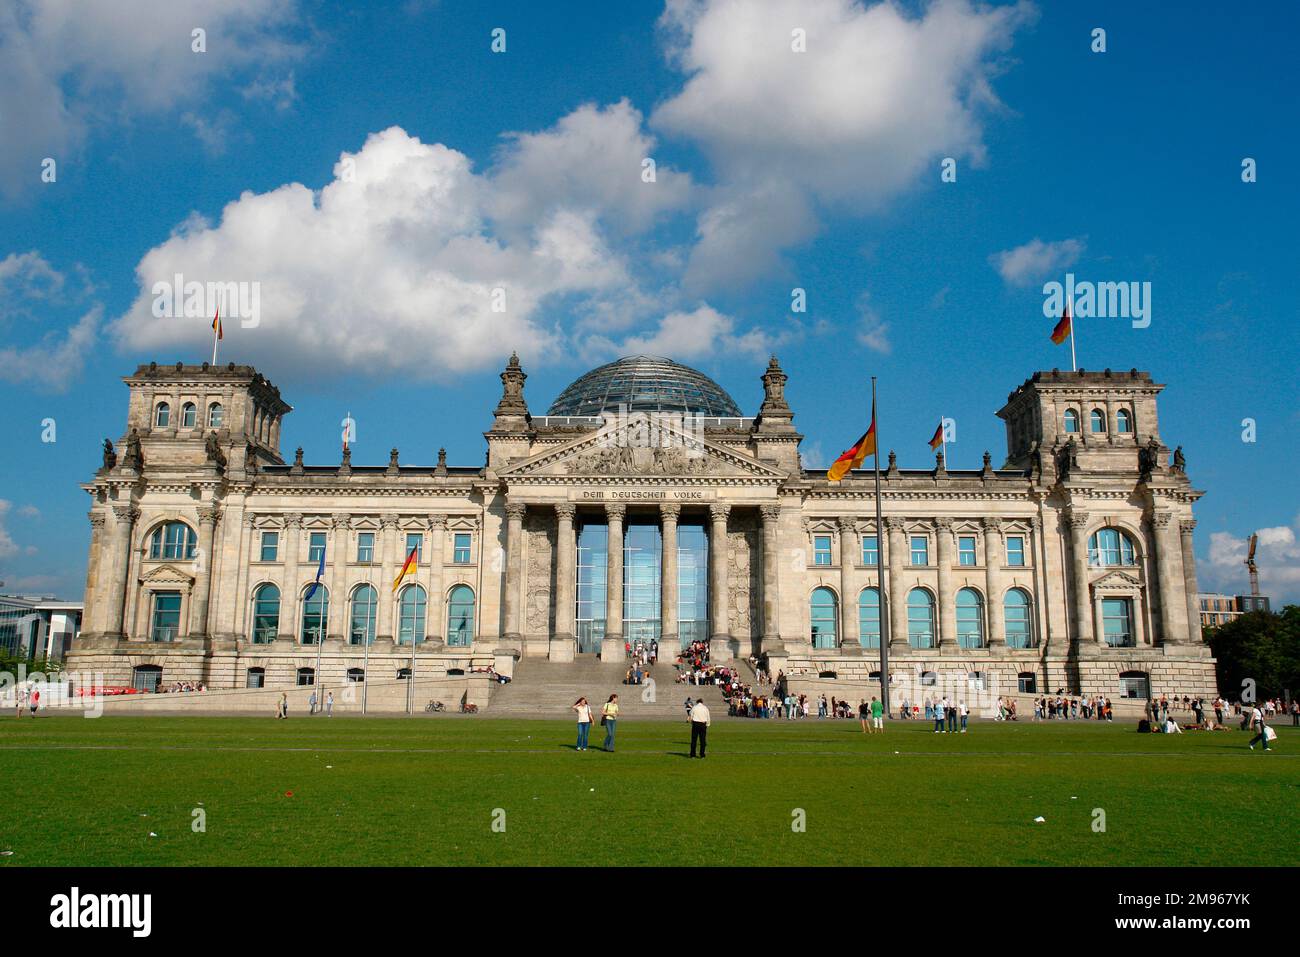 Vista sulla facciata anteriore dell'edificio del Reichstag a Berlino, Germania. L'edificio fu aperto nel 1894 per ospitare il parlamento tedesco. Fu gravemente danneggiata da un incendio nel 1933 e la sua ricostruzione non fu completata fino al 1999. La dedica, "DEM Deutschen Volke", "per il popolo tedesco", è iscritta sull'architrave. Foto Stock